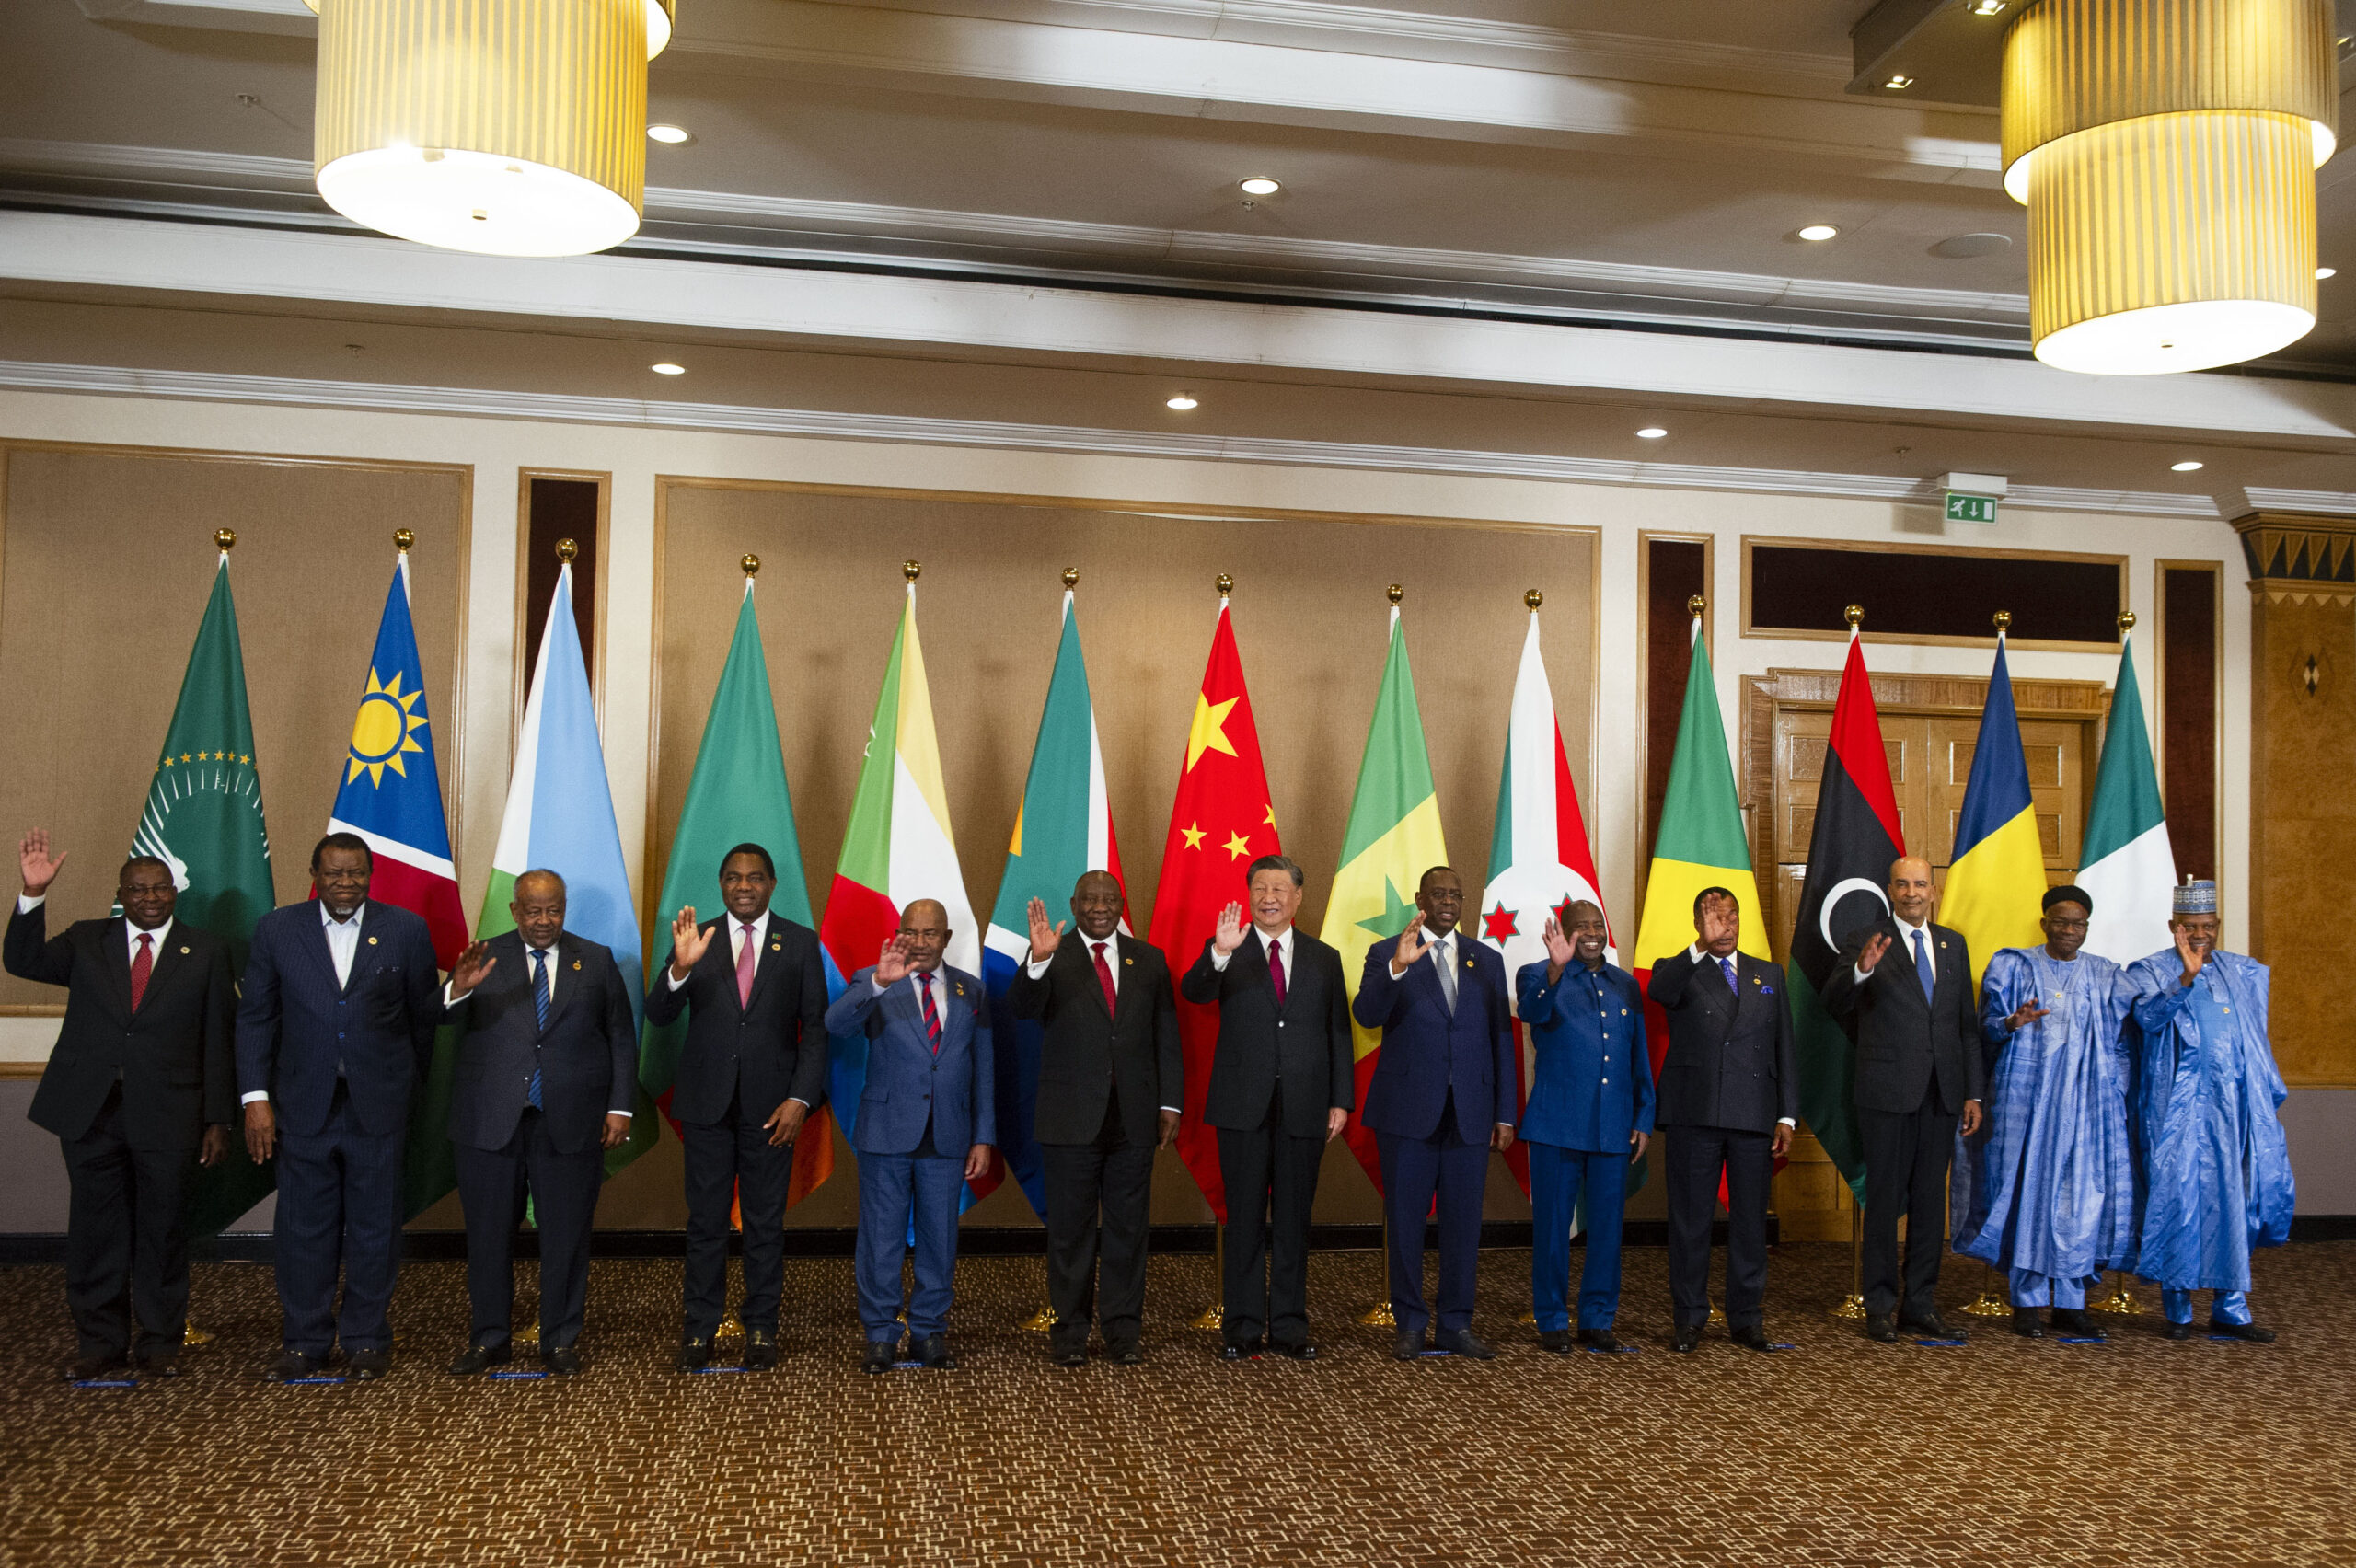 Έντονη ανησυχία εκφράζει σειρά μεγάλων ΜΜΕ της Δύσης με αφορμή την 15η Σύνοδο κορυφής του οργανισμού των χωρών BRICS